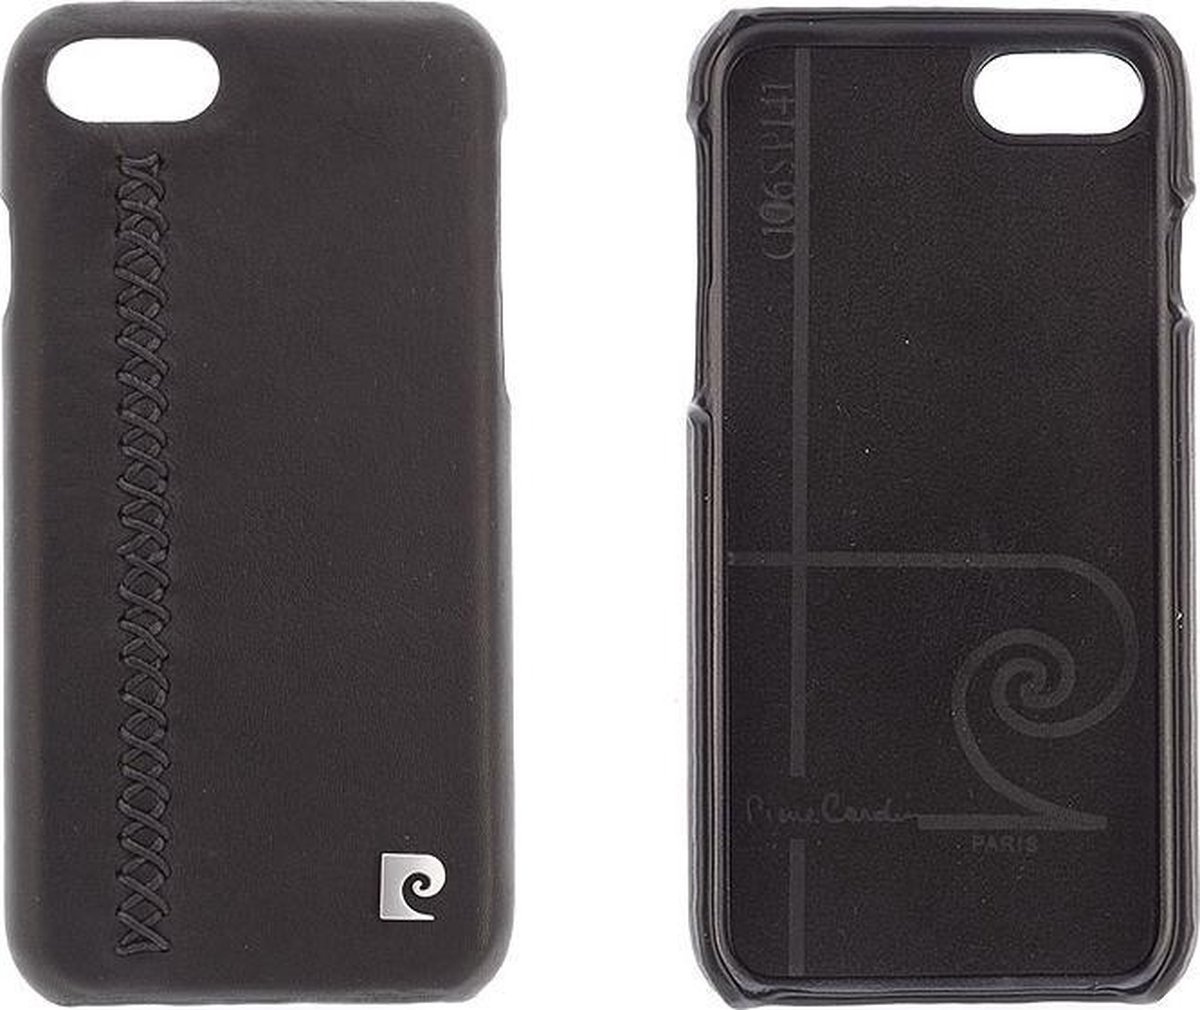 Zwart hoesje van Pierre Cardin - Backcover - Stijlvol - Leer - voor iPhone 7-8 - Luxe cover